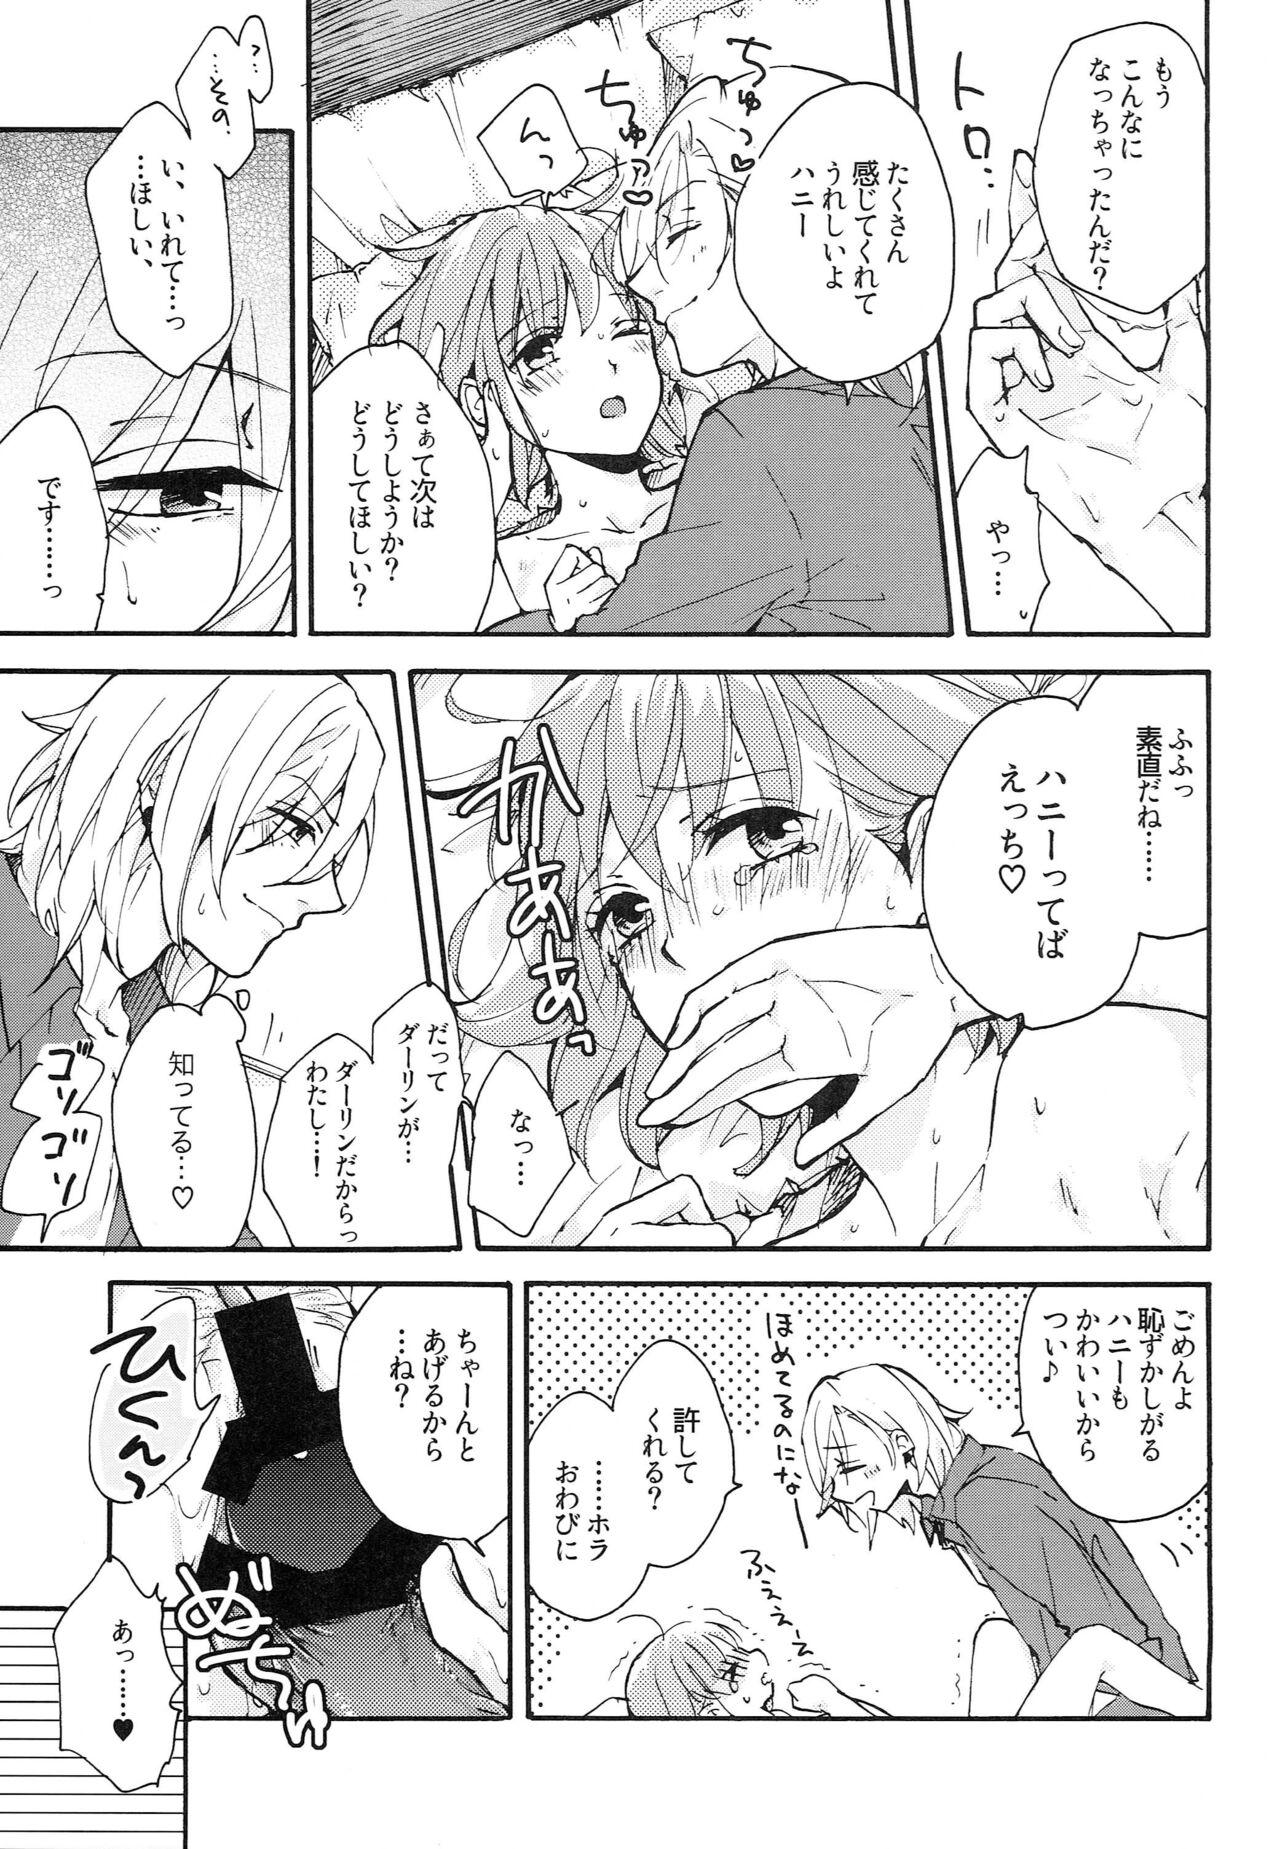 Sapphicerotica Yoru no Kohitsuji-chan - Uta no prince sama Free Blow Job - Page 6